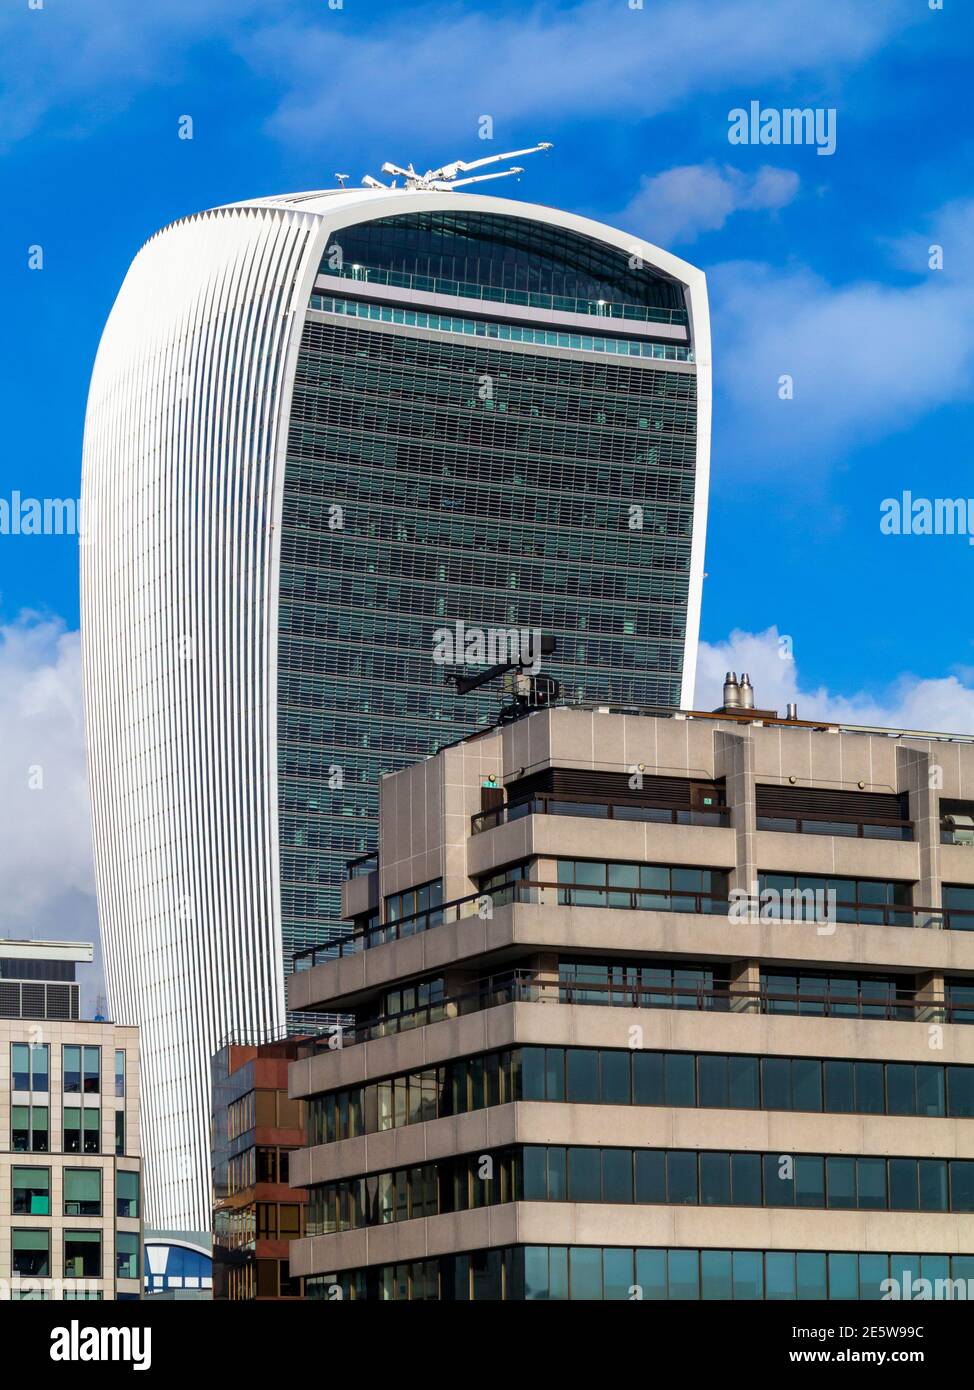 Blick auf die 20 Fenchurch Street oder das von Rafael Vinoly entworfene Bürogebäude Walkie Talkie in der City of London England mit weiteren Büros in der Nähe. Stockfoto